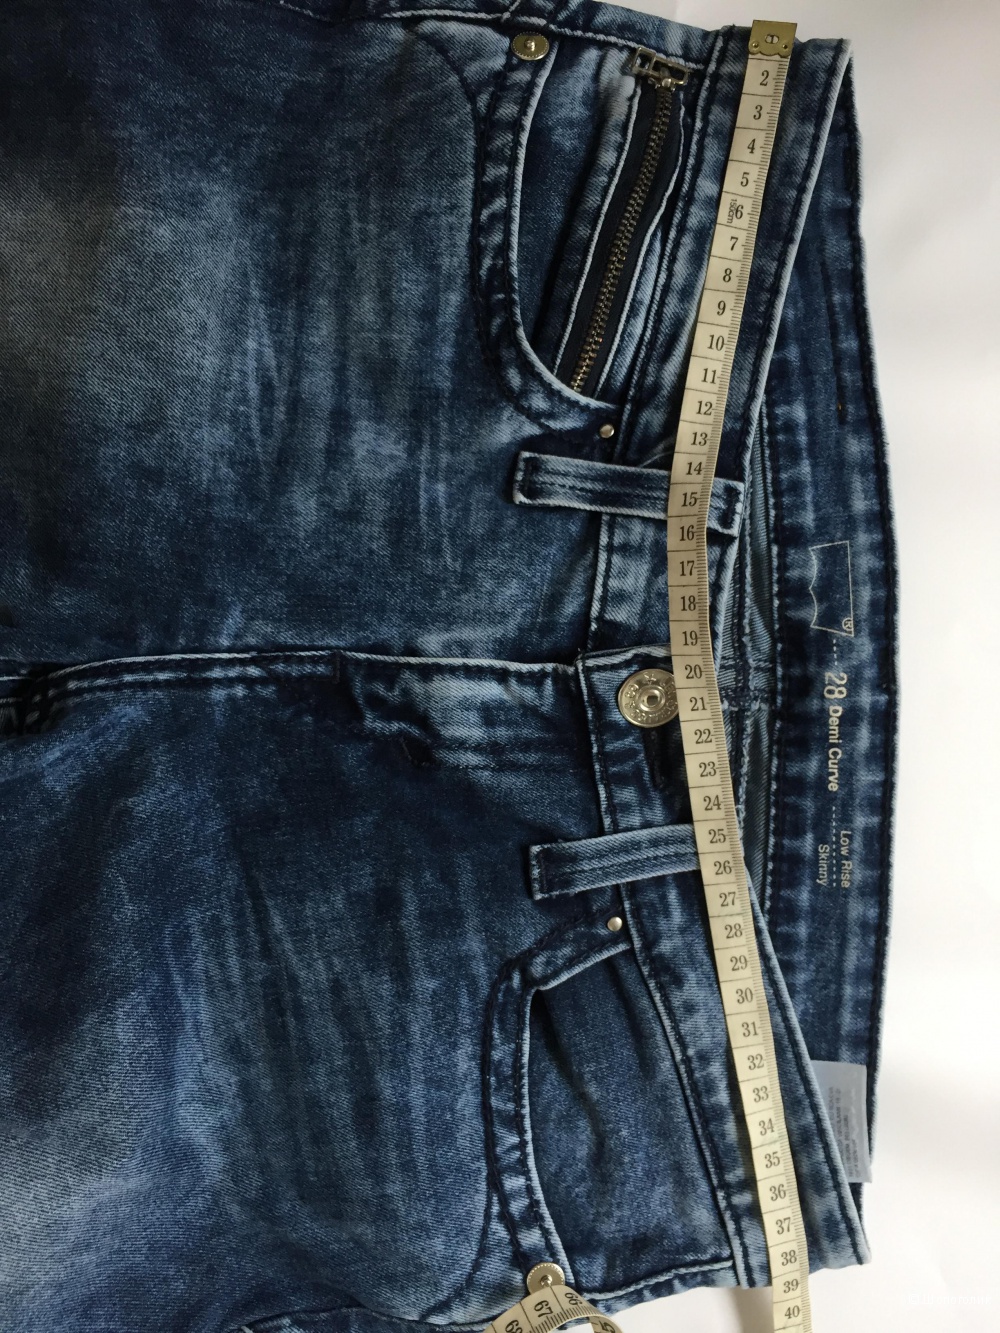 Сет джинсы Levi’s размер 28 и джинсы YDS размер 28